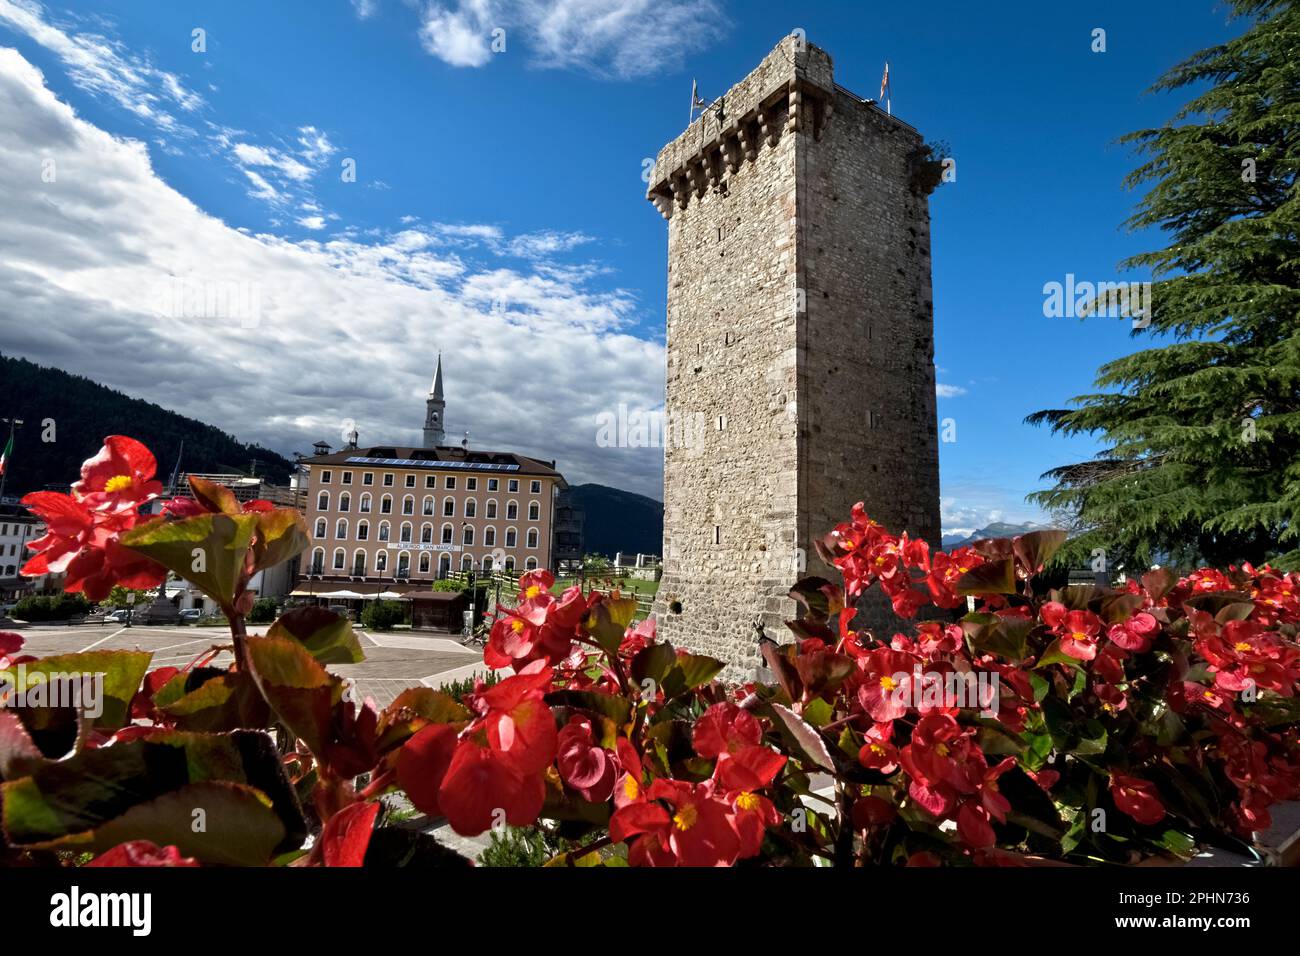 Enego: La tour médiévale Scaliger et la place du village. Sette Comuni, Vicenza, Vénétie, Italie. Banque D'Images